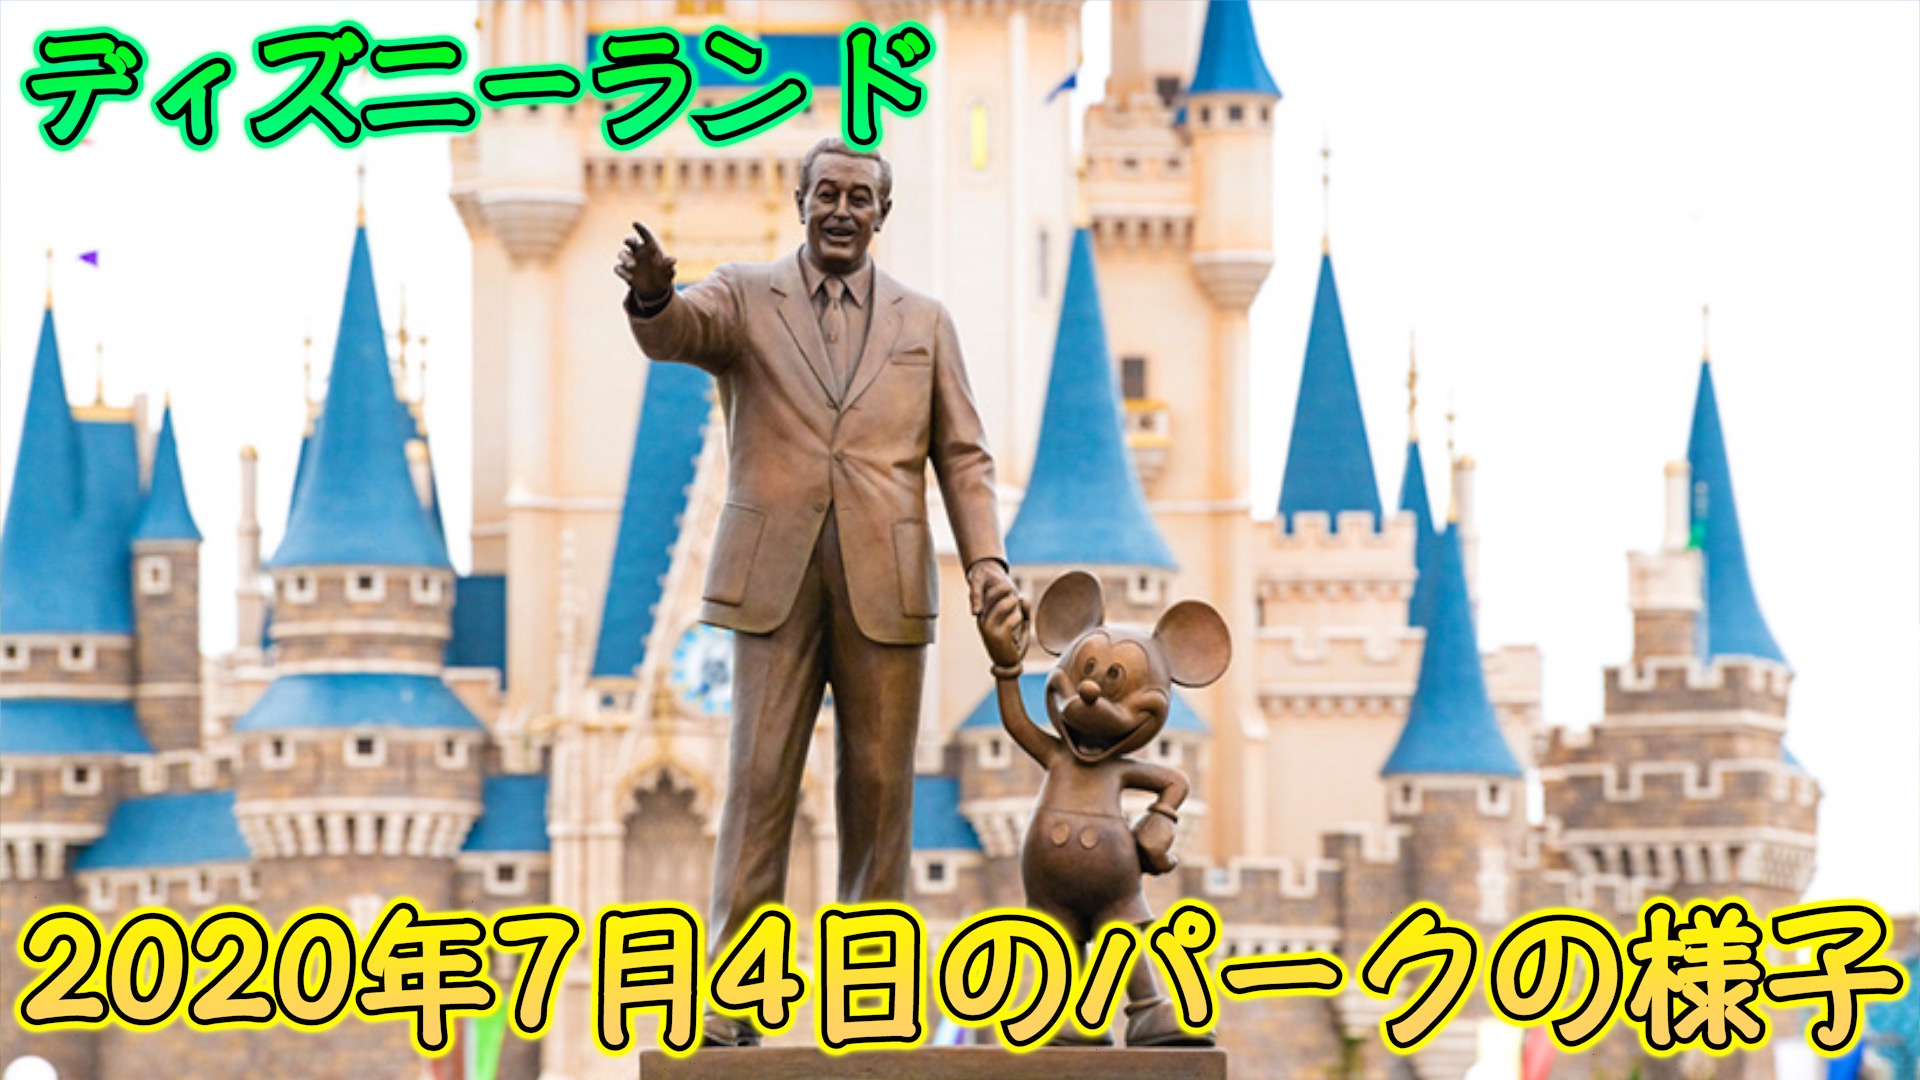 パーク再開4日目 ビッグサンダー マウンテン33周年 年7月4日のtdlのパーク内の様子 東京ディズニーランド Disney Play Time